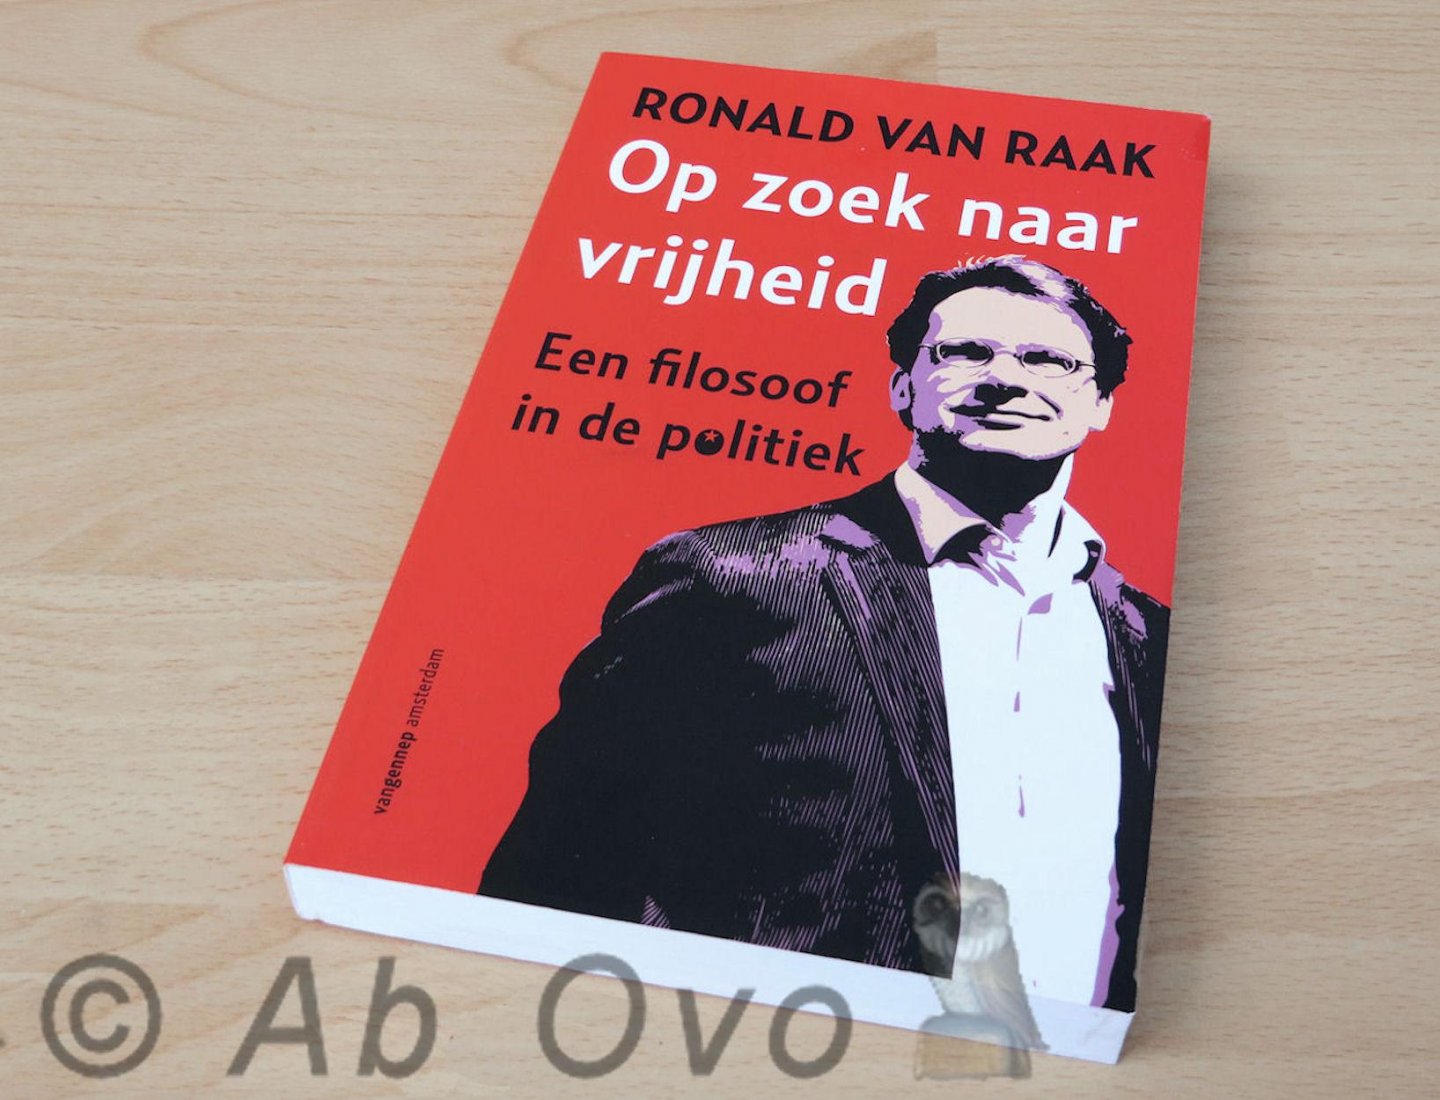 Raak, Ronald van - Op zoek naar vrijheid: een filosoof in de politiek